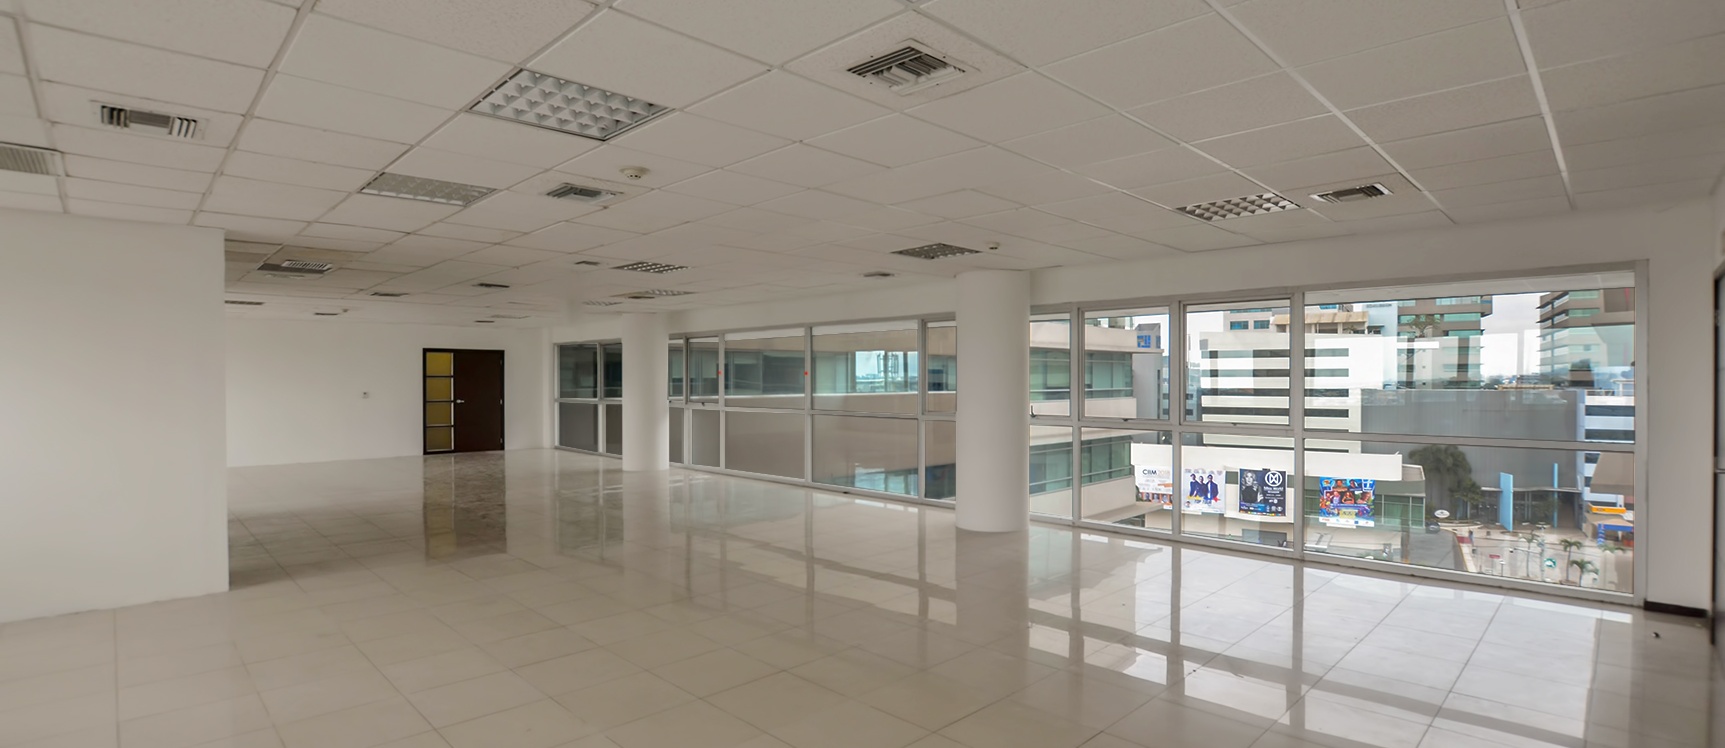 GeoBienes - Oficina en alquiler en Torres del Mall sector norte de Guayaquil - Plusvalia Guayaquil Casas de venta y alquiler Inmobiliaria Ecuador